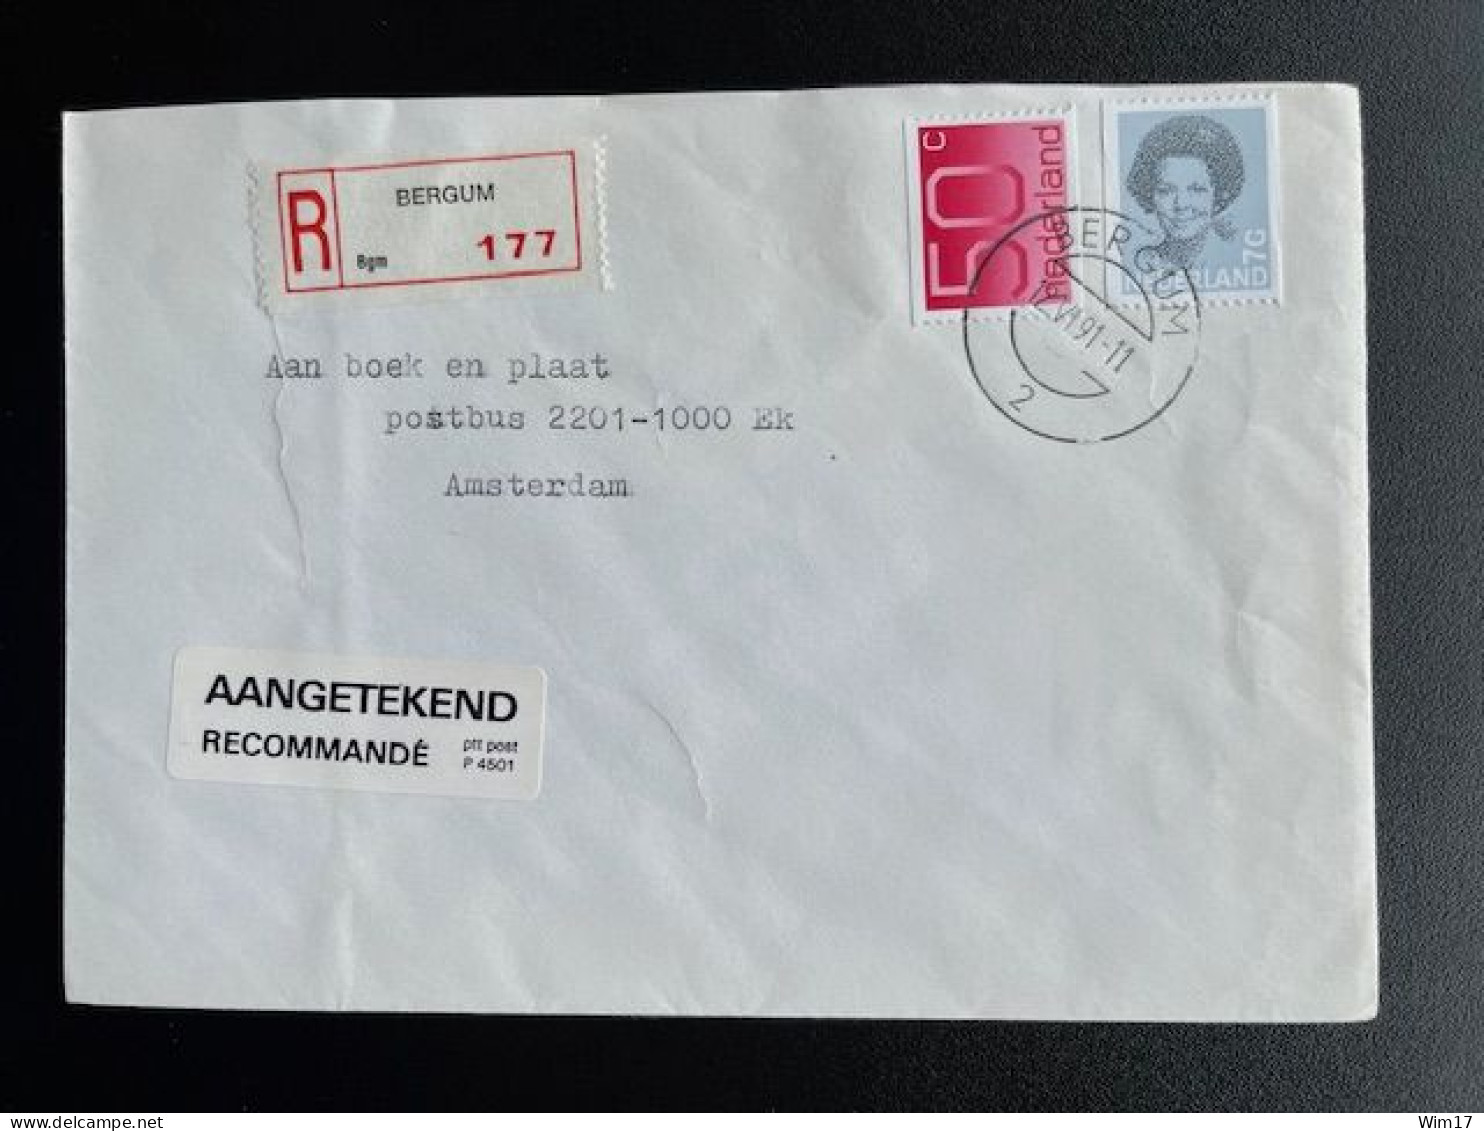 NETHERLANDS 1991 REGISTERED LETTER BERGUM TO AMSTERDAM 12-06-1991 NEDERLAND AANGETEKEND - Lettres & Documents